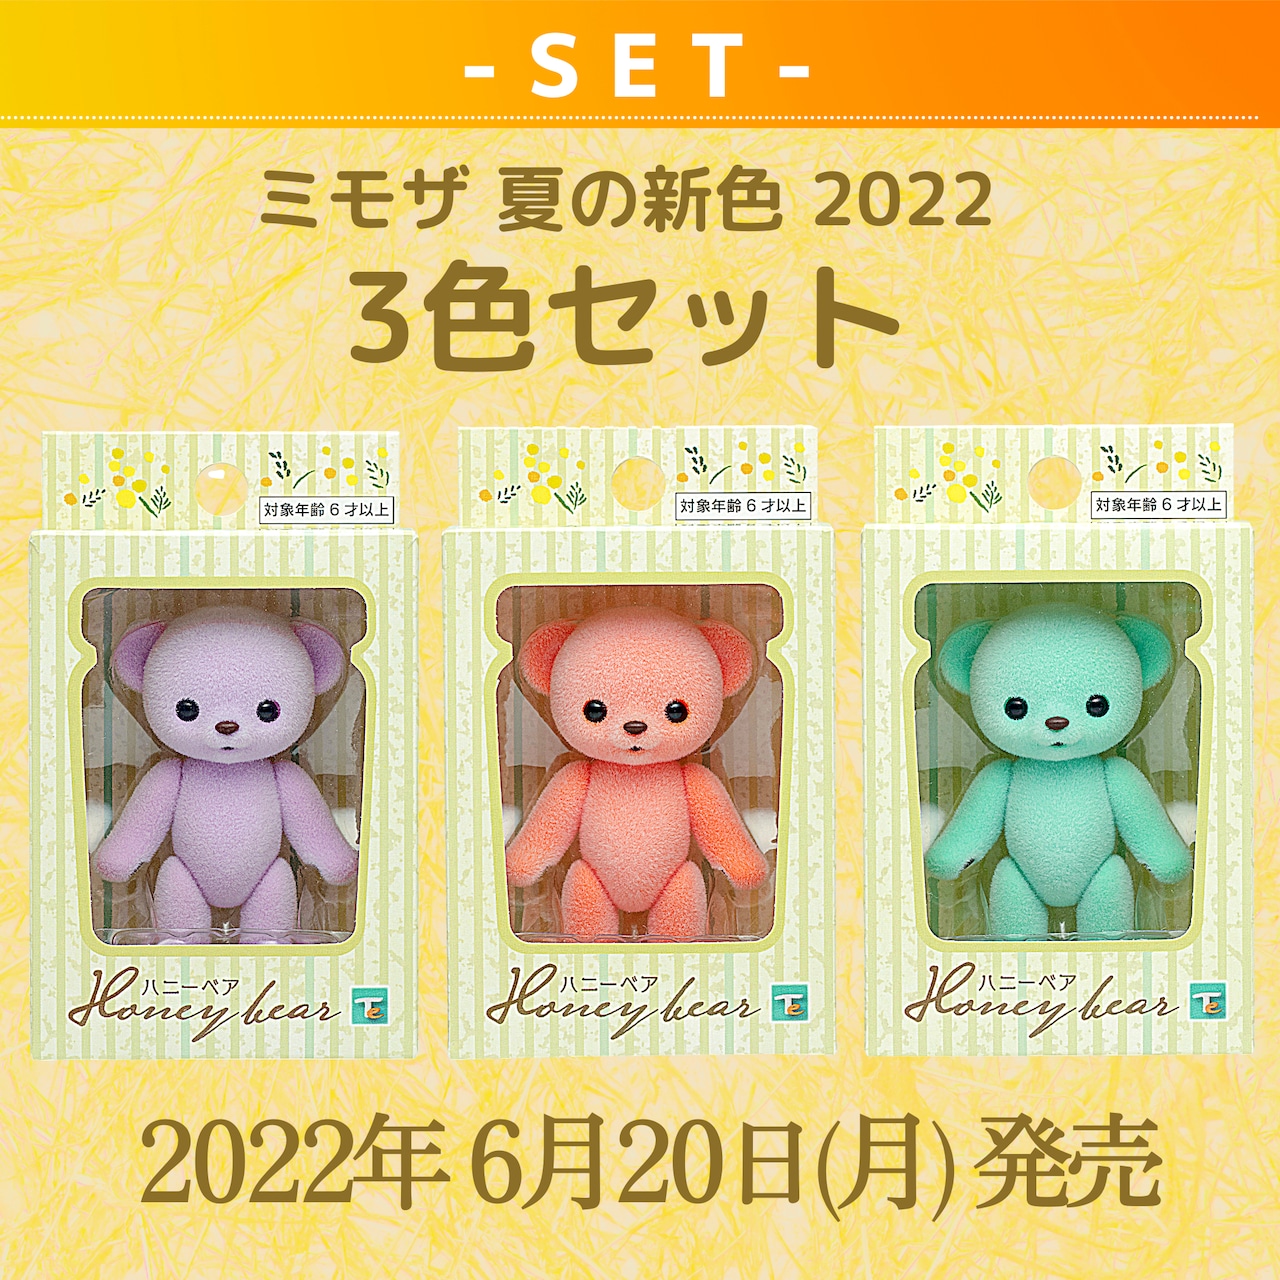 【セット商品】ハニーベア ミモザ 夏の新色 2022 3色セット